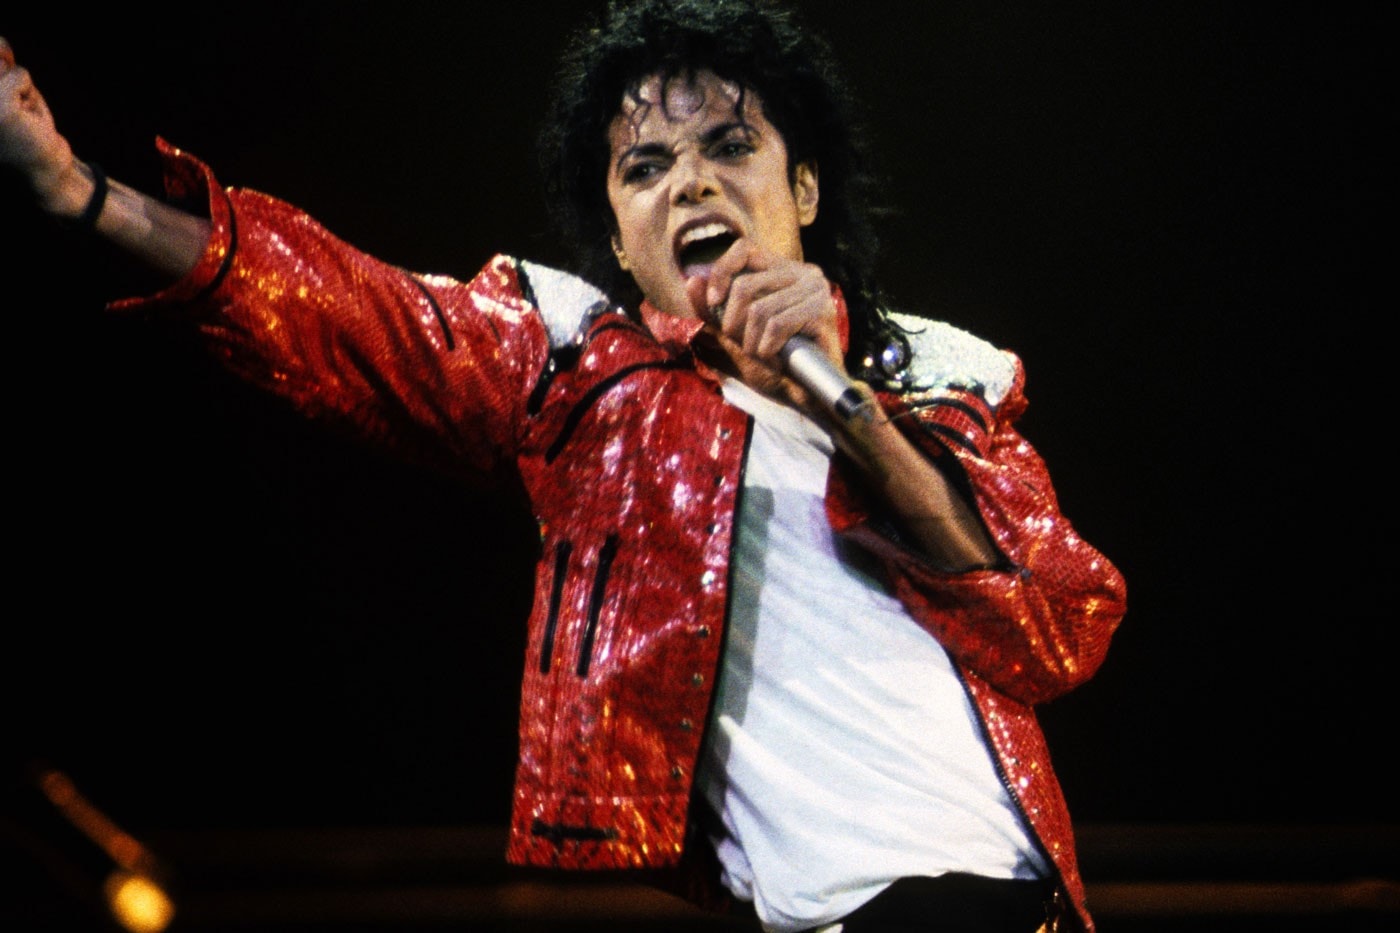 Michael Jackson 傳記電影宣布將由《私刑教育/叛諜裁判》導演執導